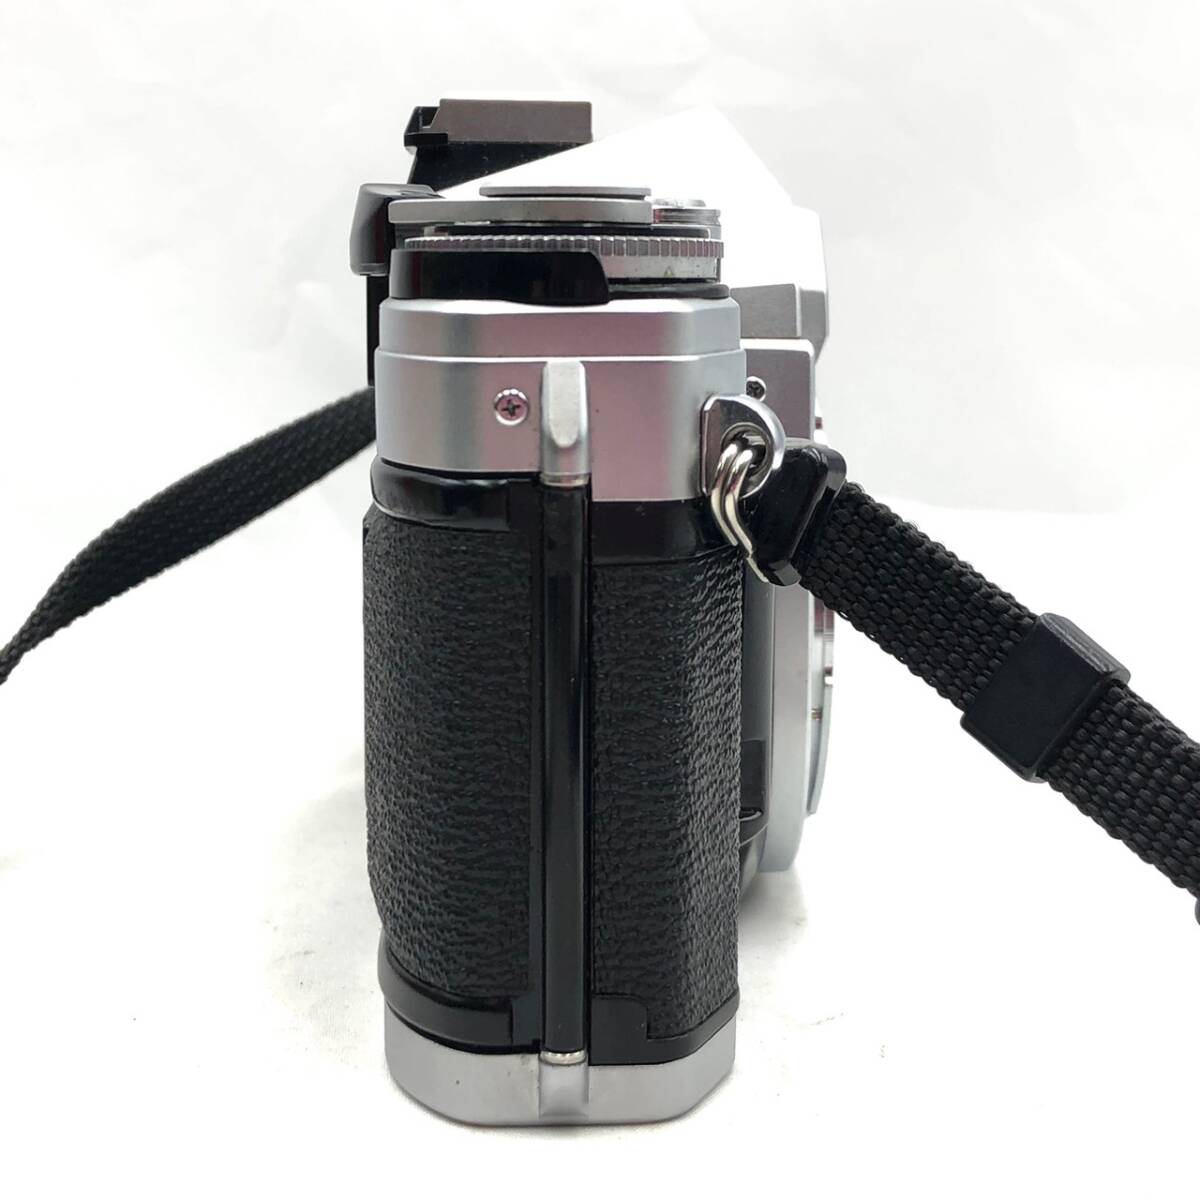 BEm031R 80 箱付き Canon AE-1 一眼レフ フィルムカメラ SIGMA STANDARD-ZOOM 1:2.8-4 f=35-70mm 説明書 ストロボ_画像5